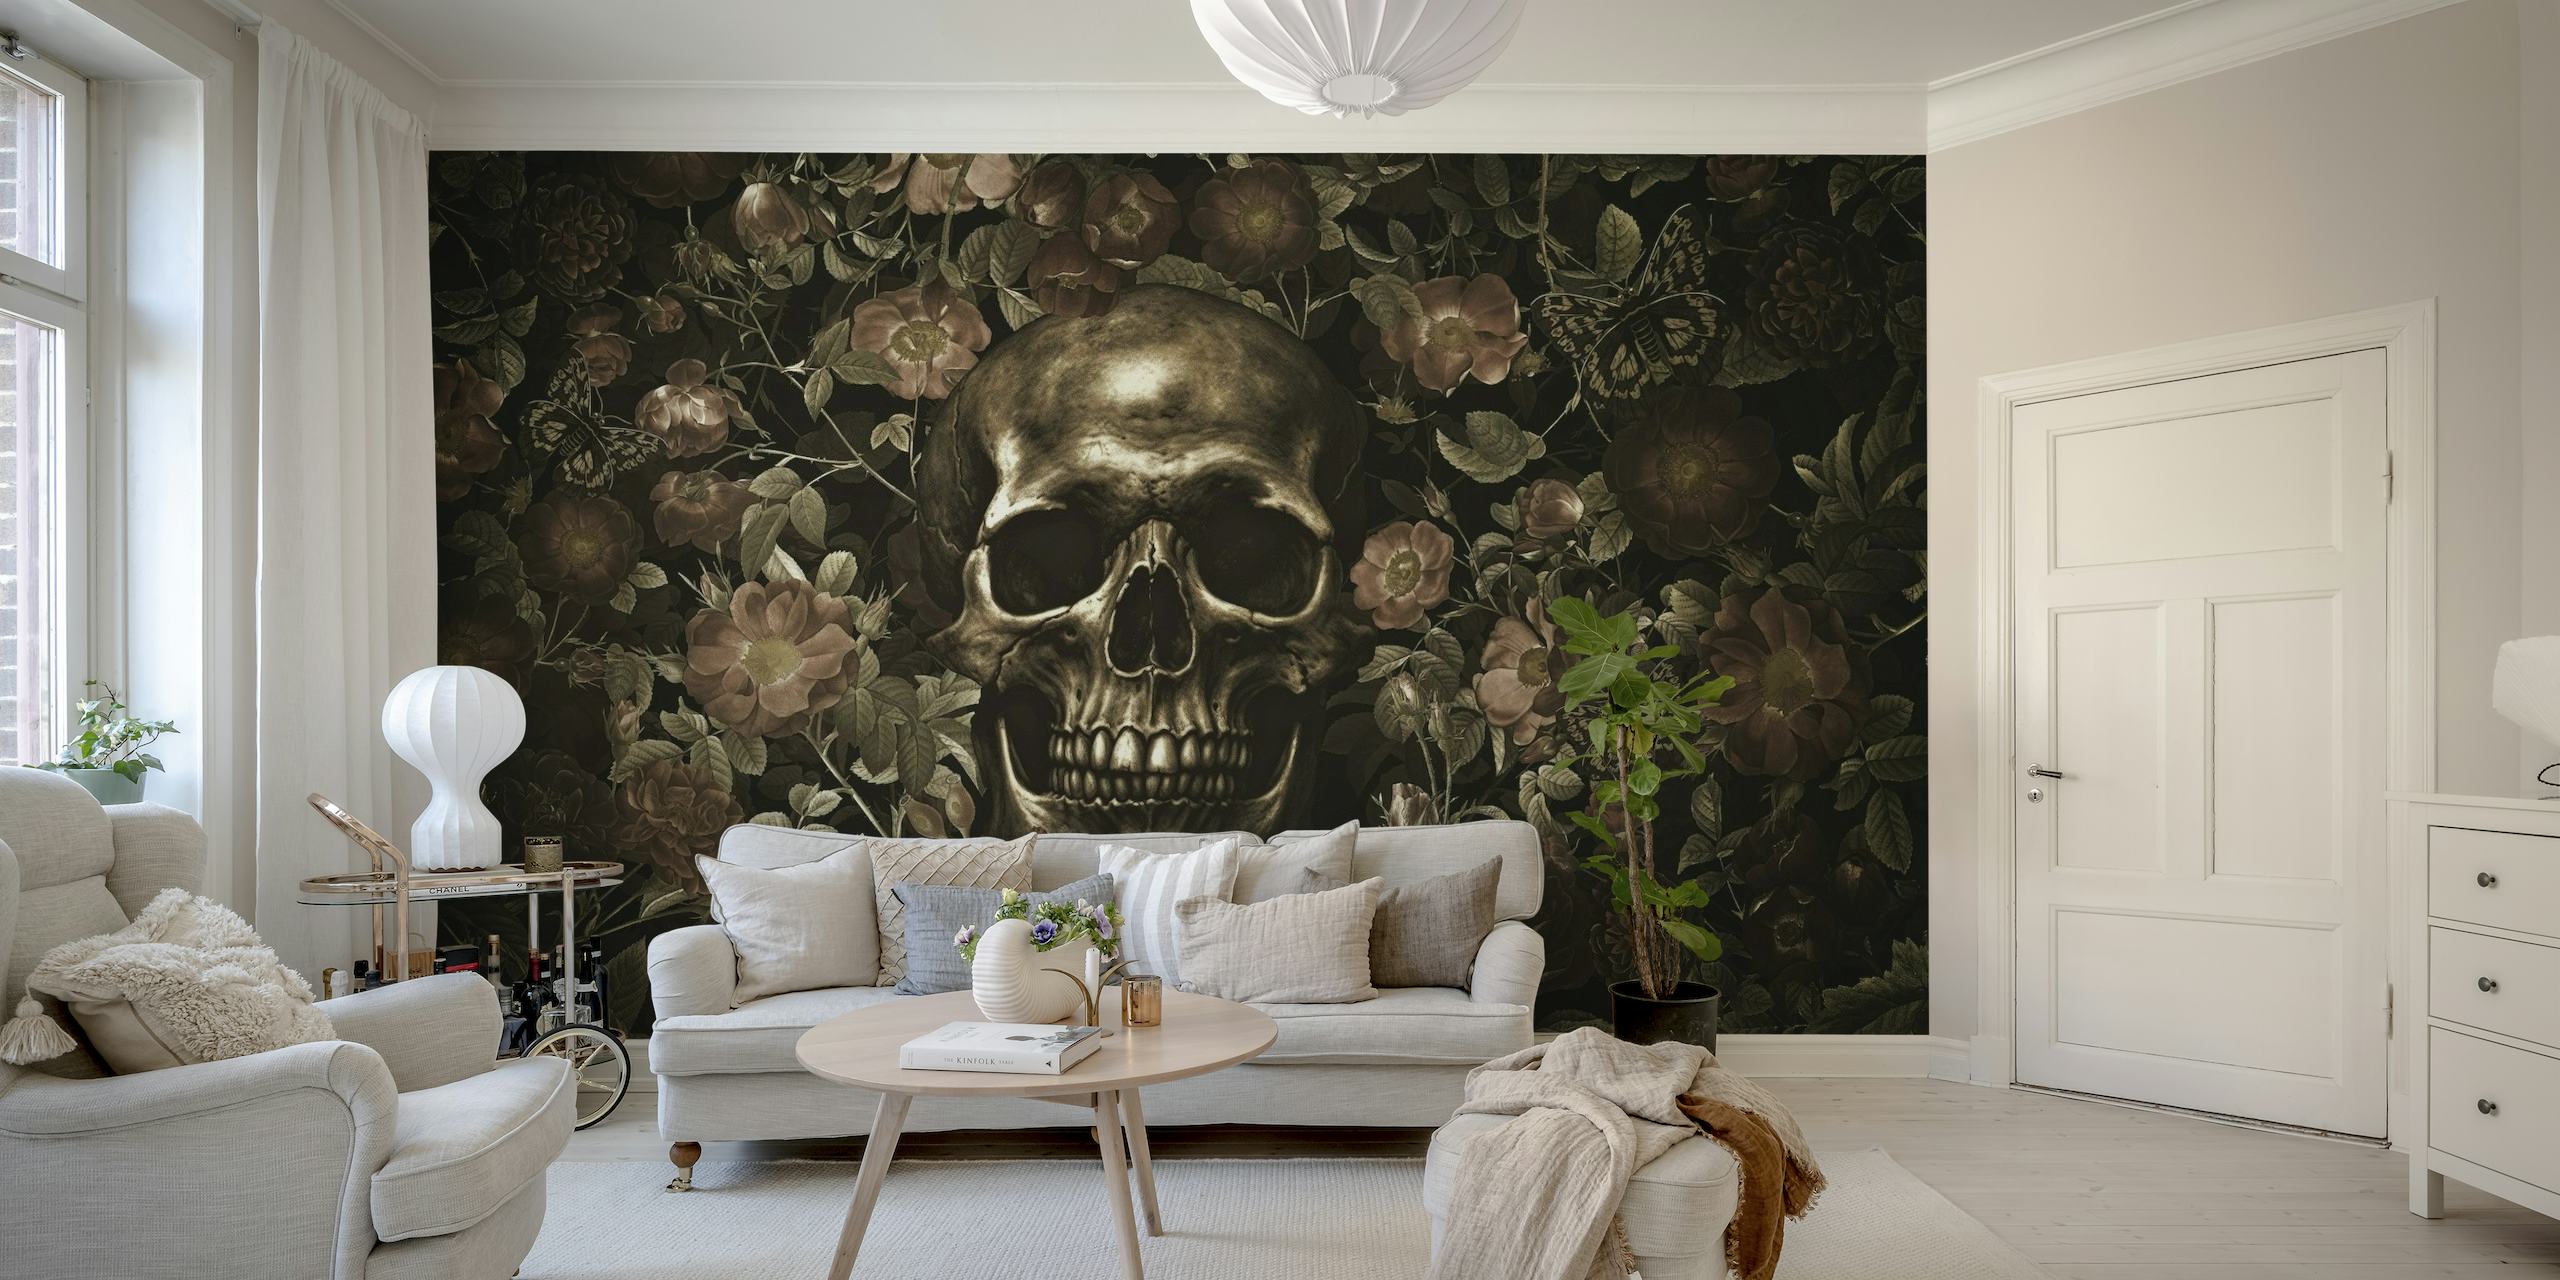 Et gotisk-inspireret vægmaleri med et gyldent kranium omgivet af mørke blomstrende roser